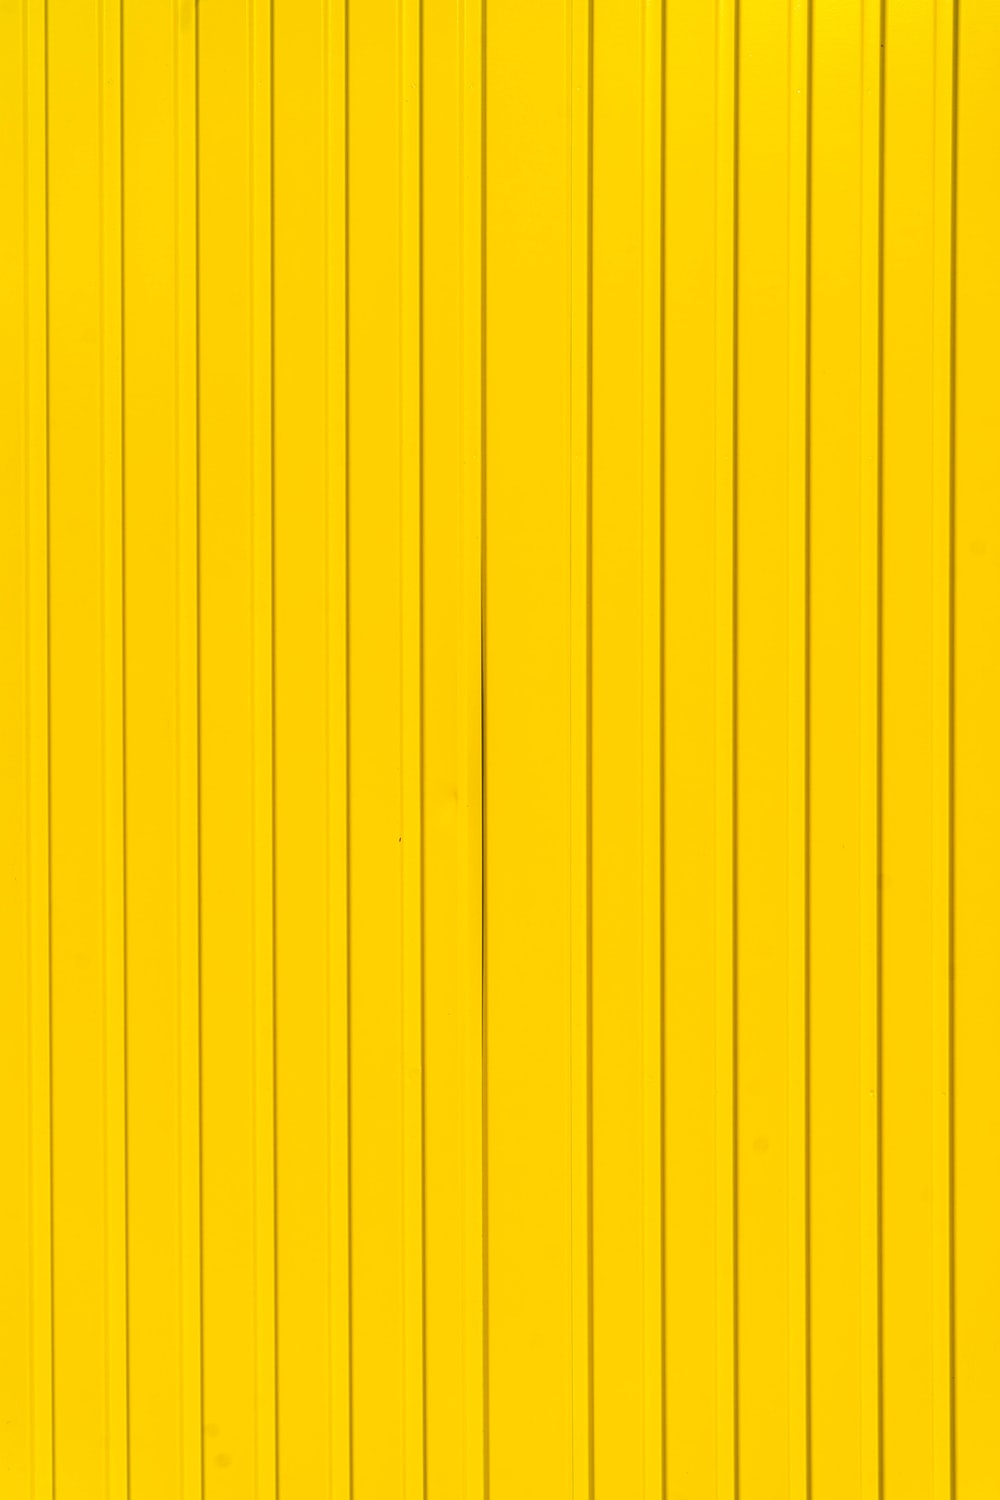 Chọn ngay hình ảnh bức tường màu vàng miễn phí để tài trợ cho thiết kế của bạn. Với nhiều tùy chọn khác nhau, bạn sẽ tìm thấy bức tường màu vàng hoàn hảo cho dự án của mình.